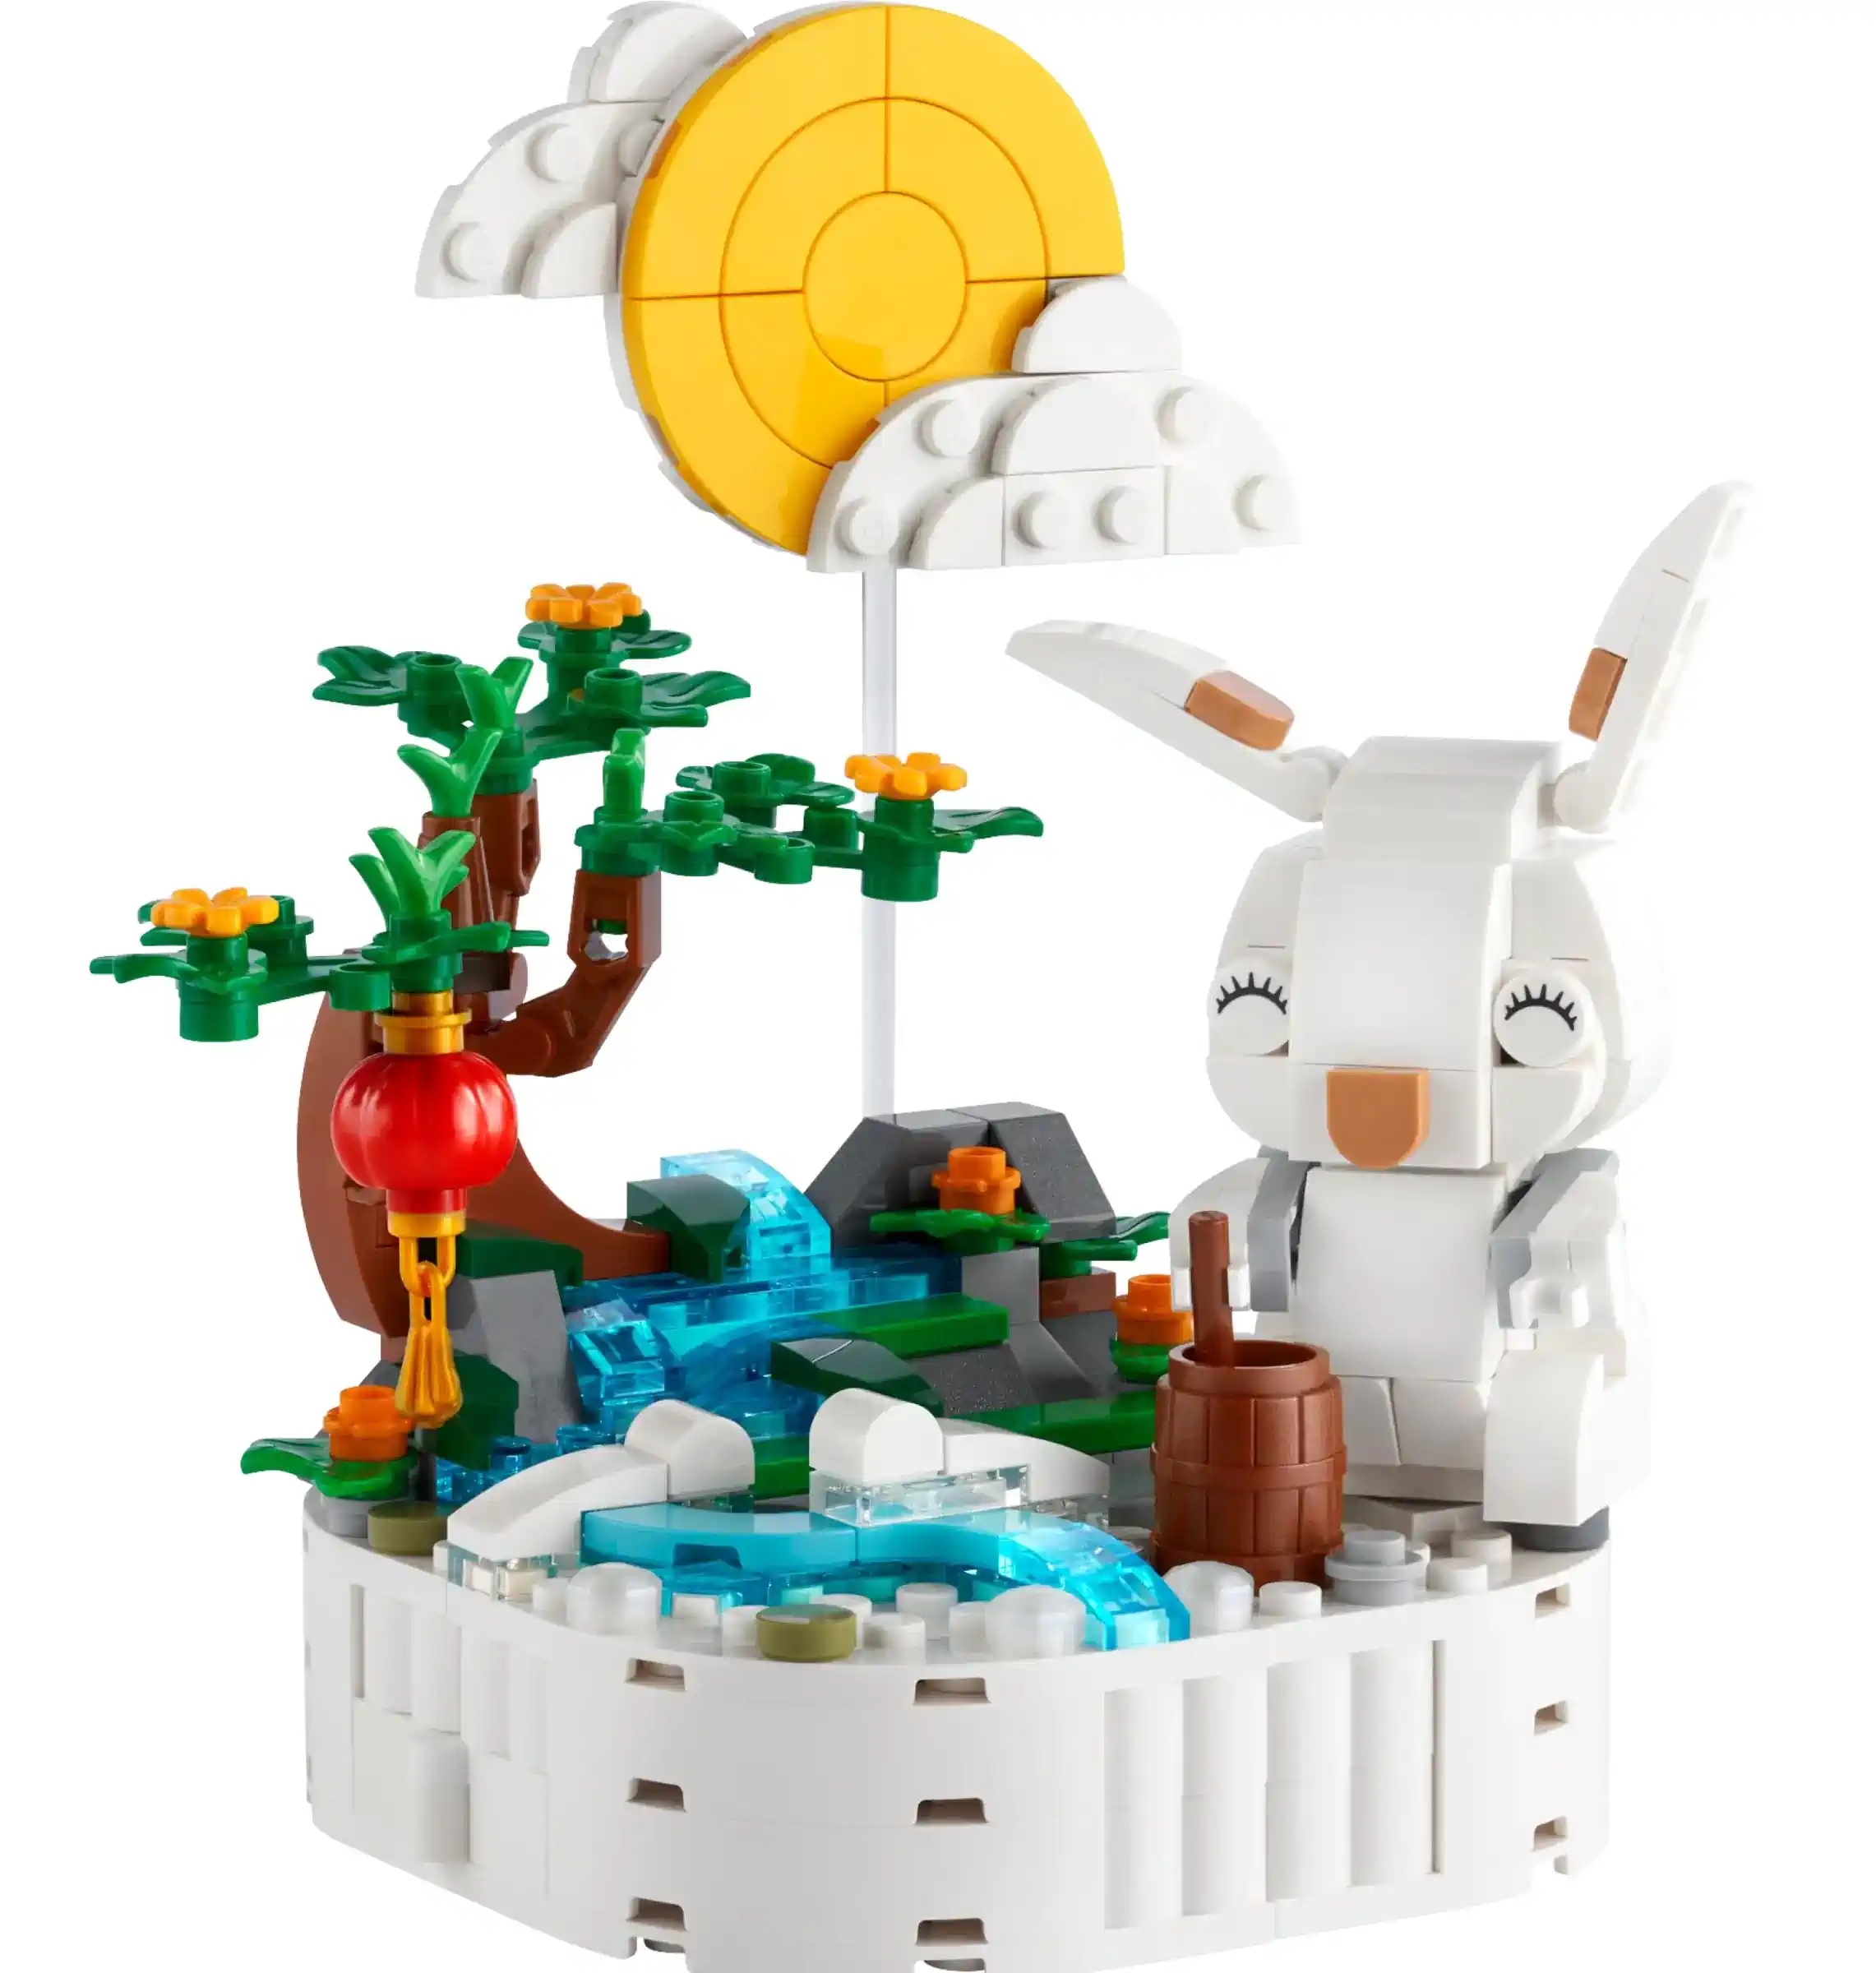 LEGO Jadehase 40643